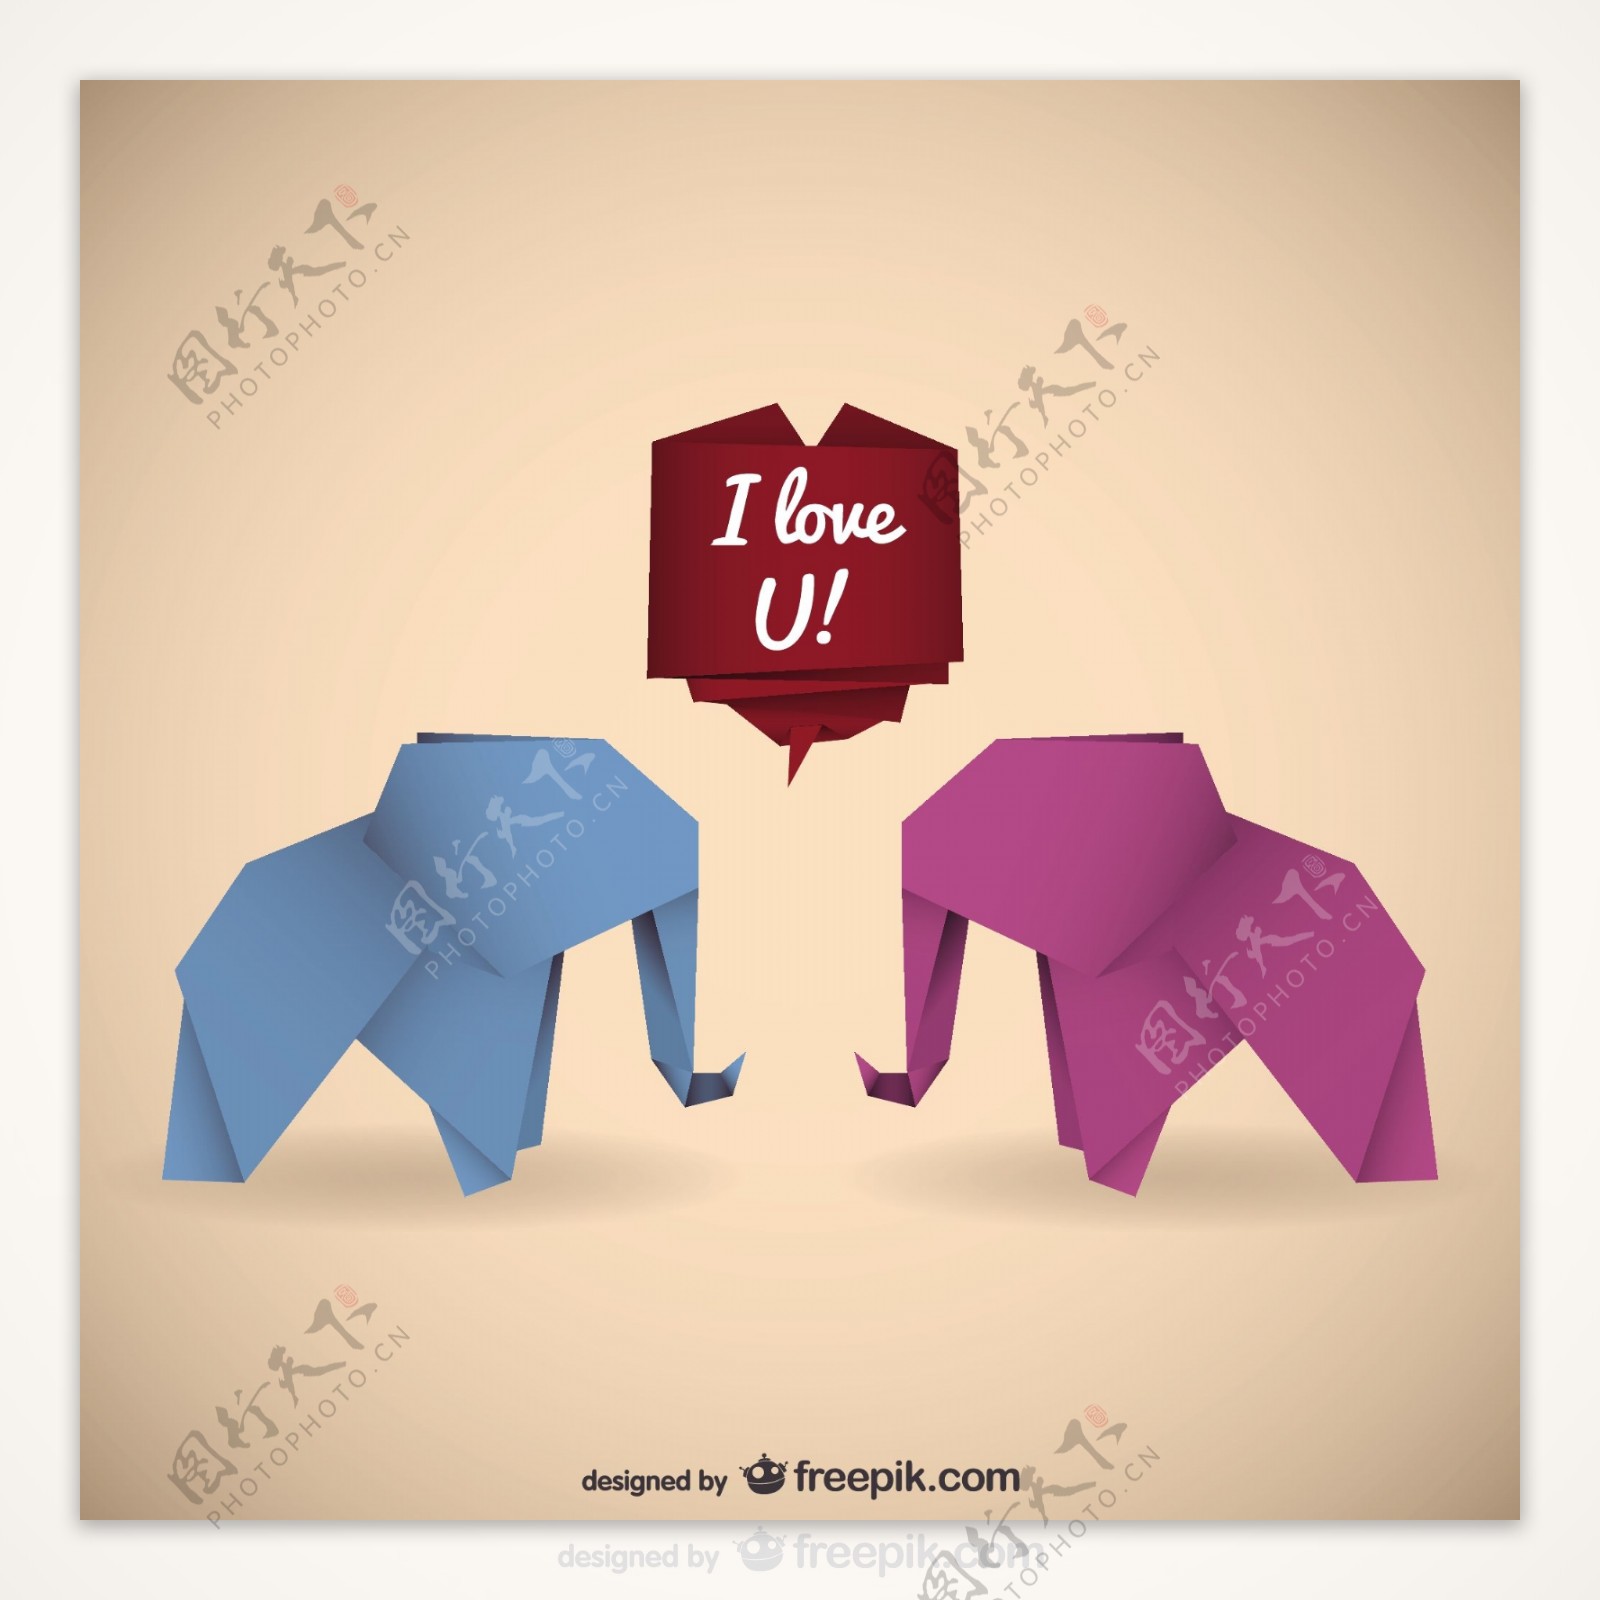 折纸大象与爱的信息